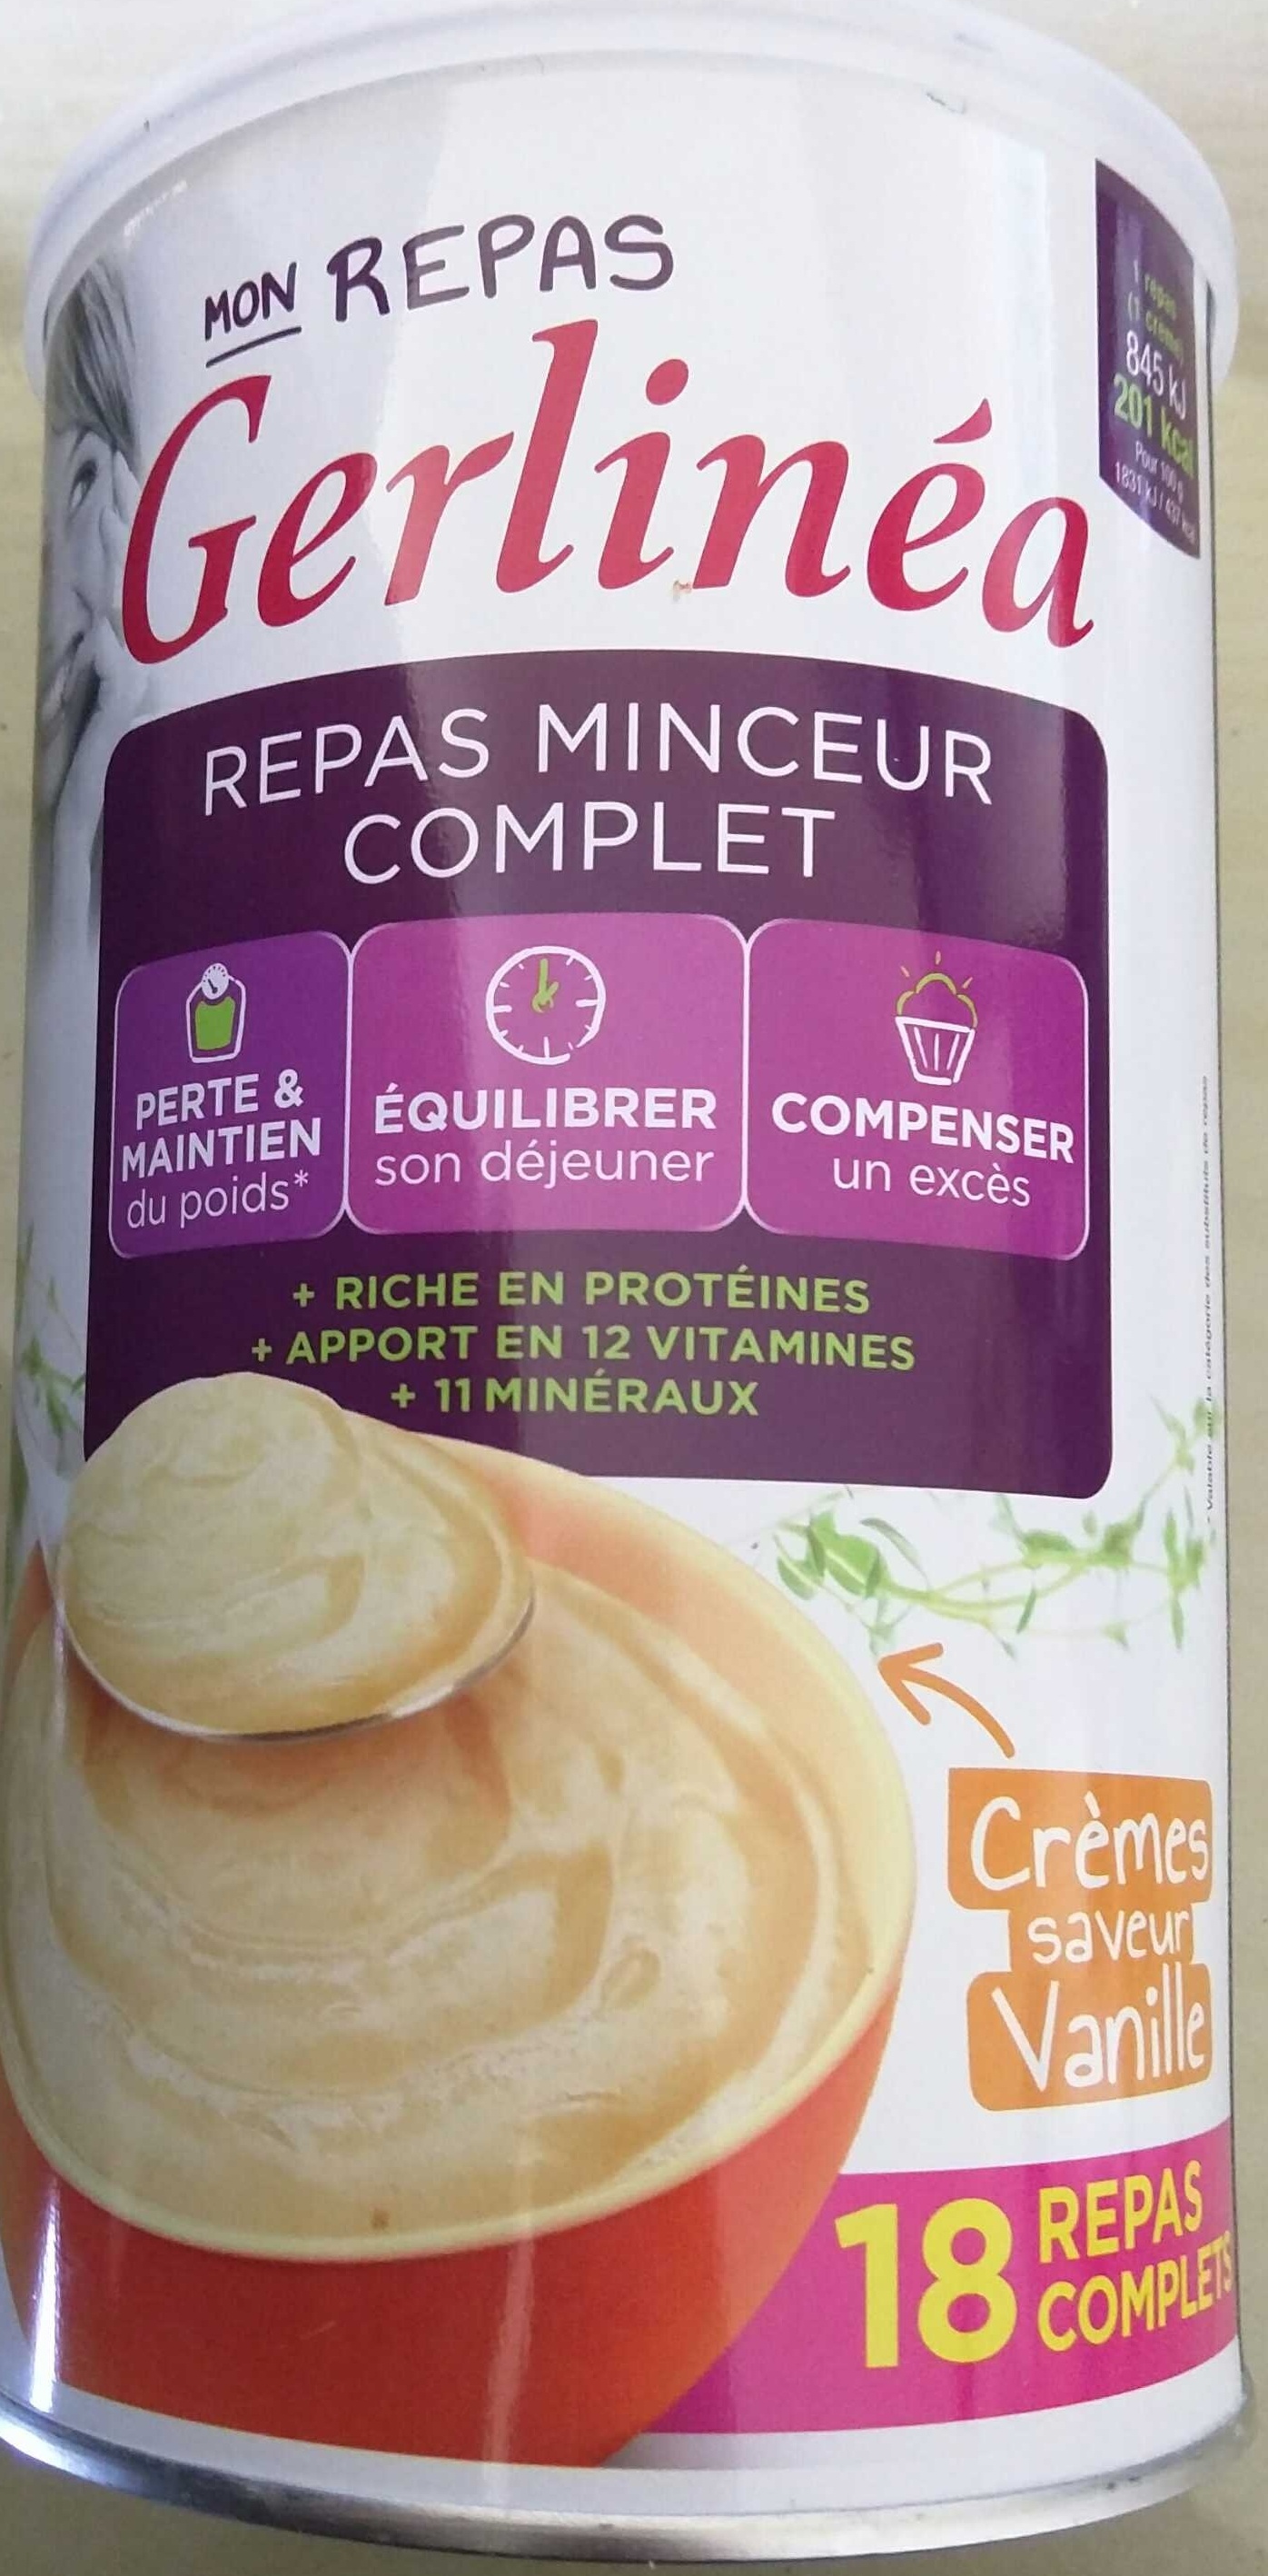 Repas Minceur Complet Saveur Vanille - Product - fr